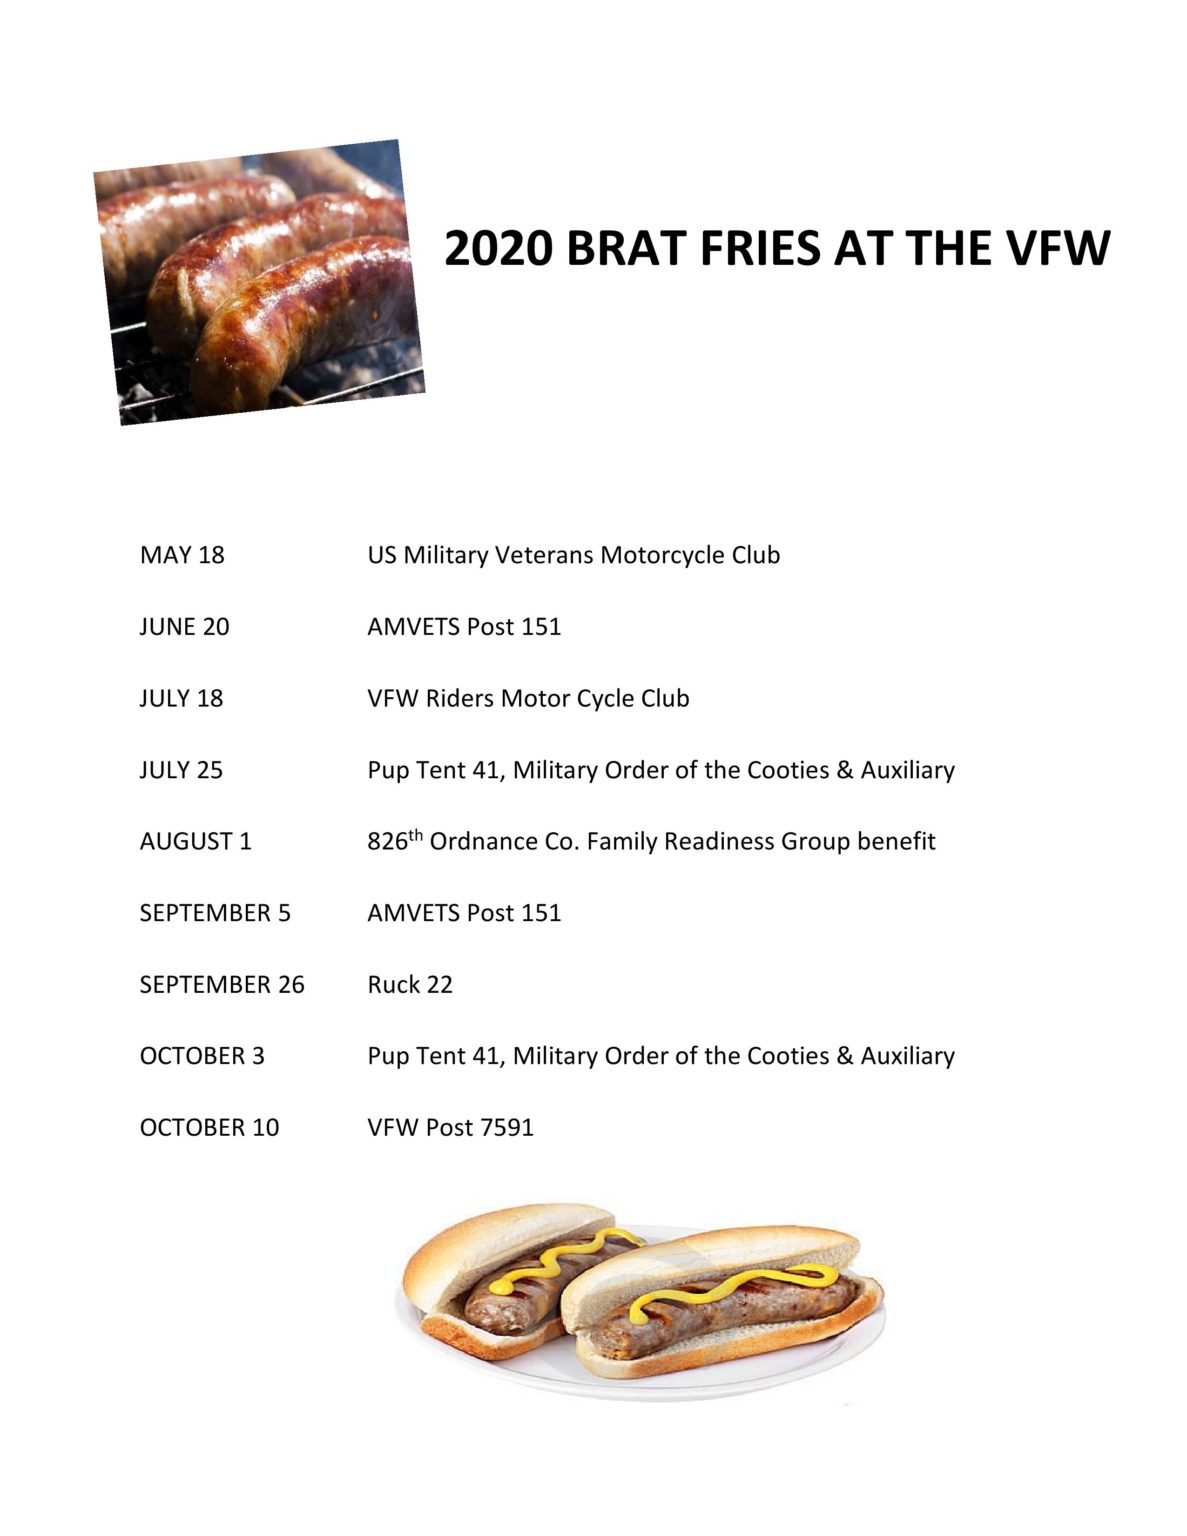 2020 Brat Fry Schedule VFW POST 7591